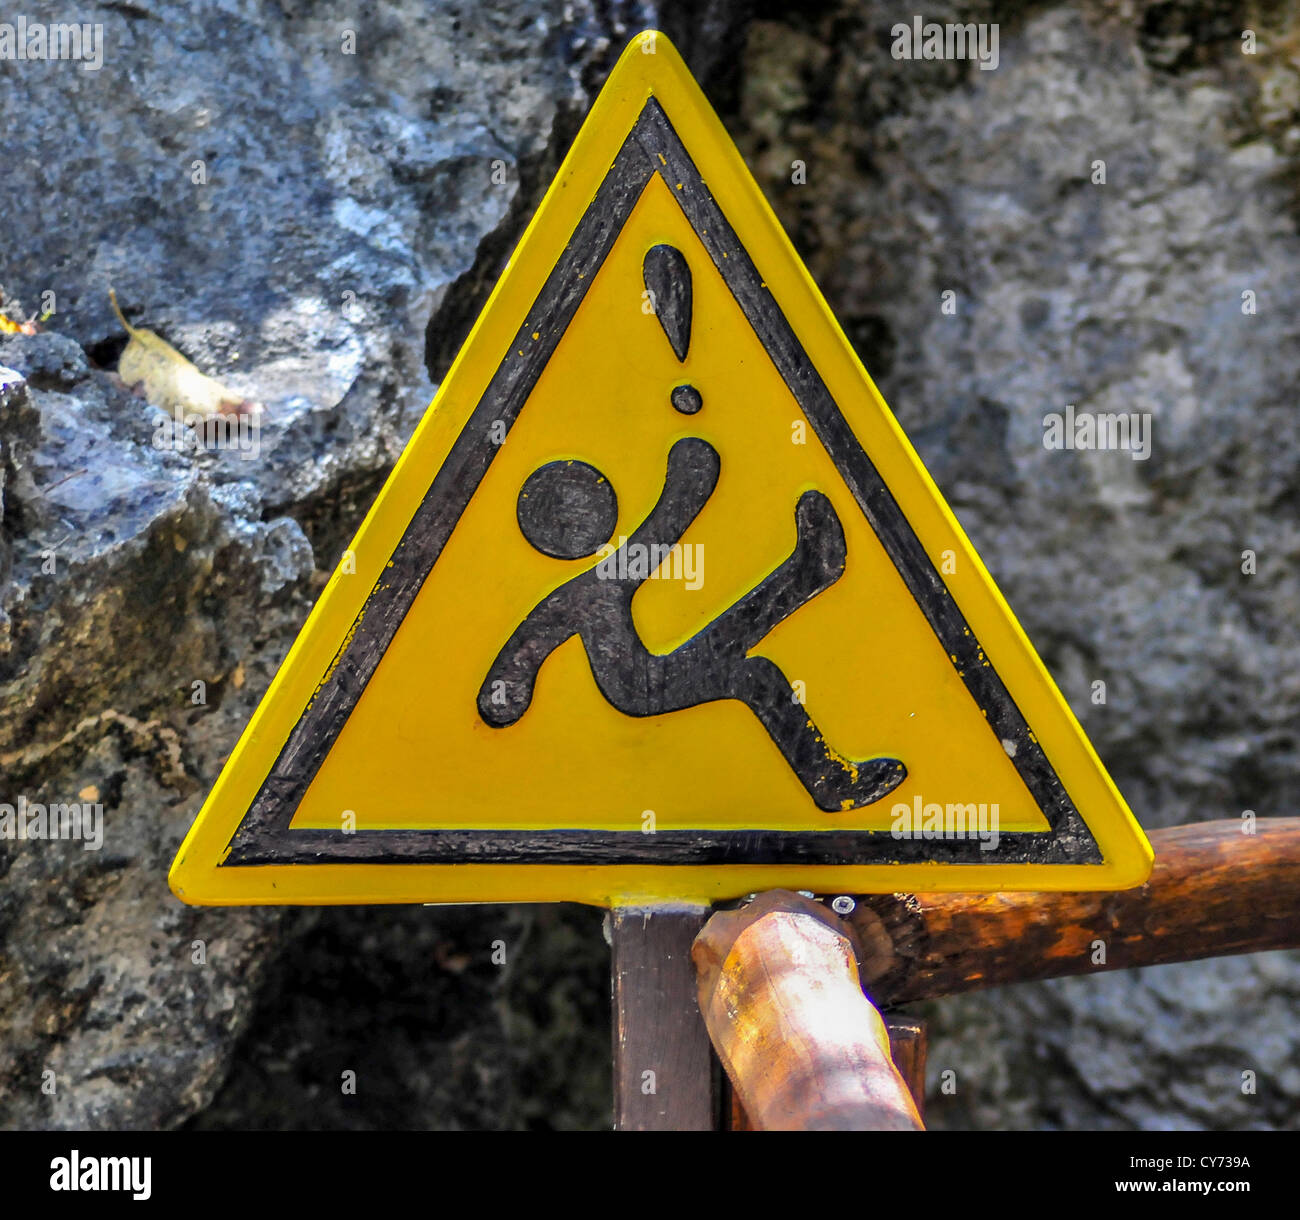 Eine gelbe dreieckige rutschige wenn nass Warnschild in México mexikanischen mit ein Ideogramm eine fallende Figur Dreieck Ausrufezeichen Stockfoto